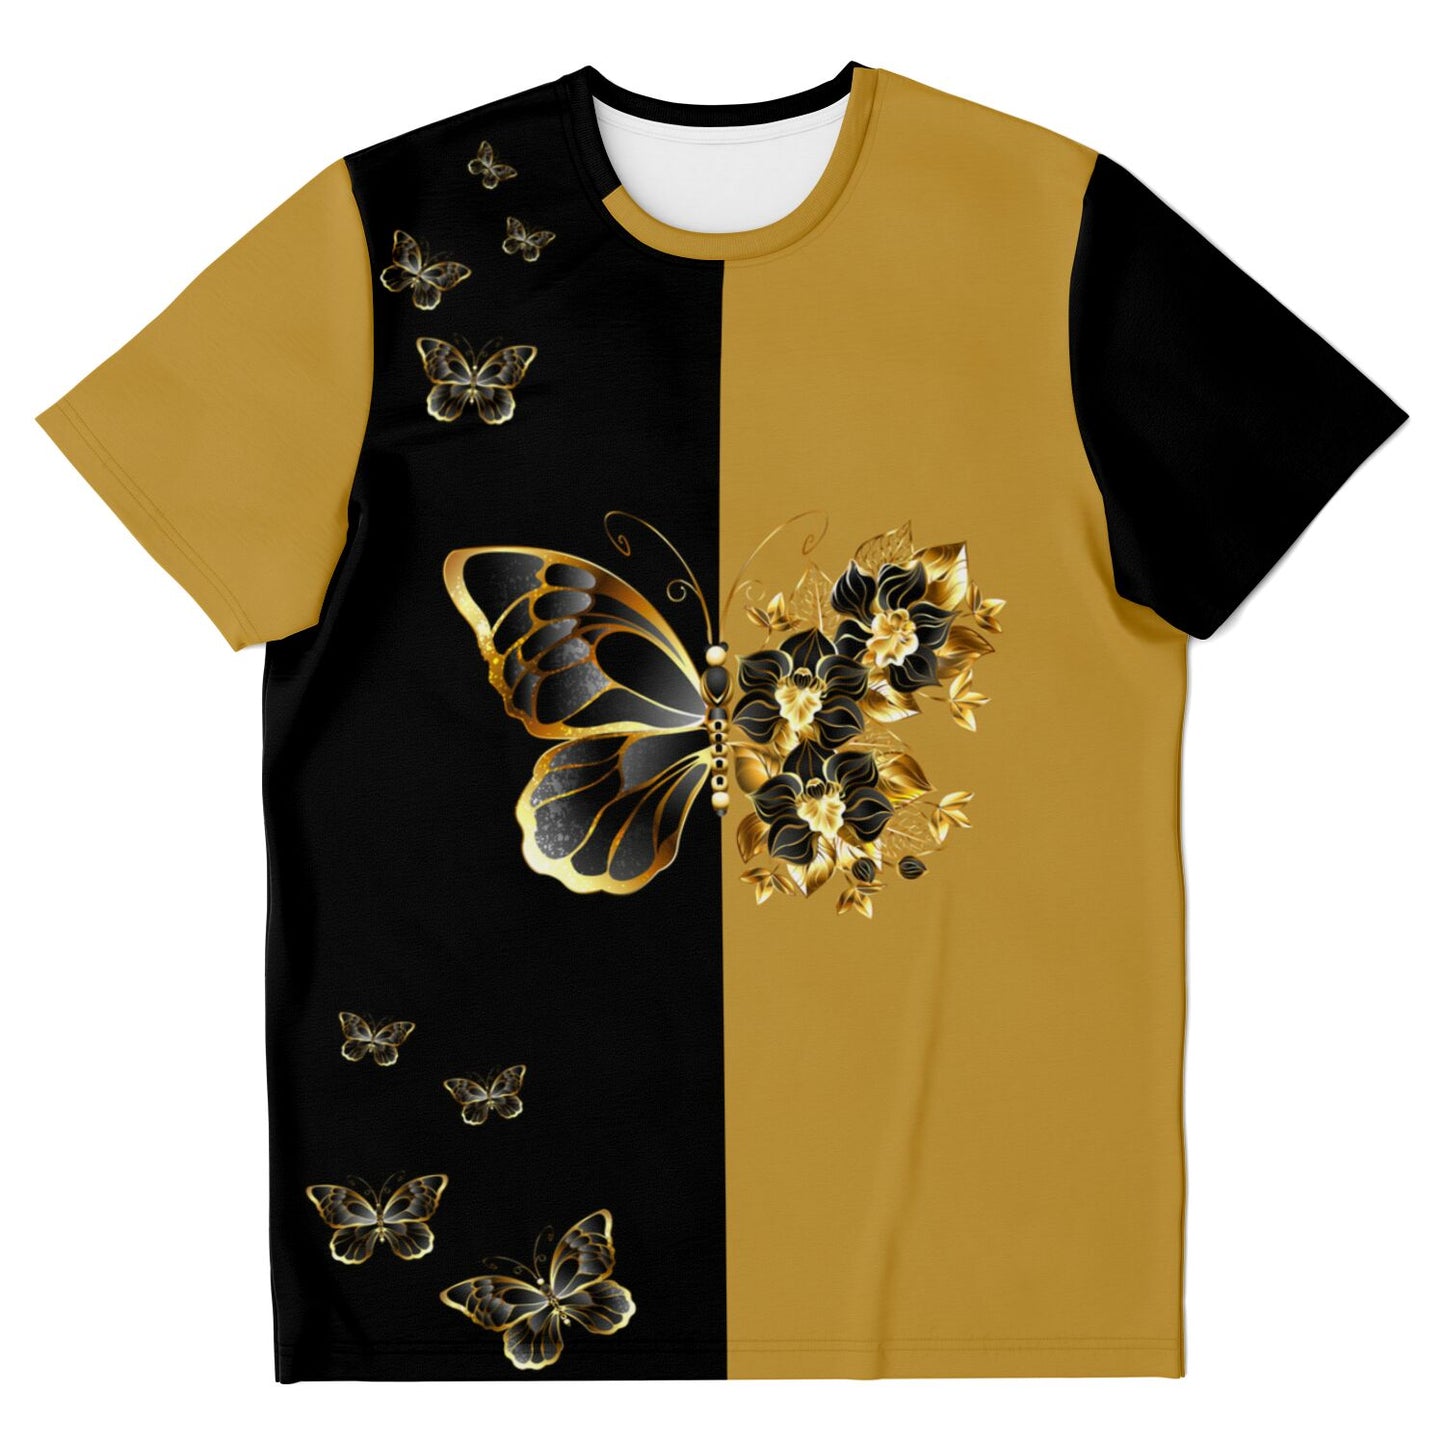 Gold Butterfly Ying-Yang T-shirt